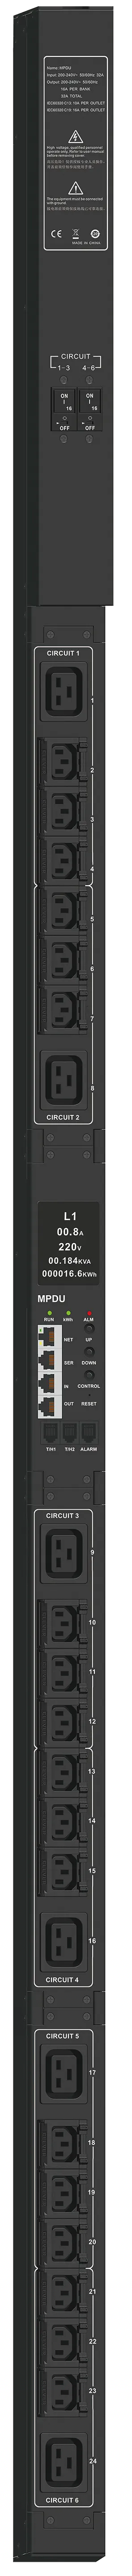 ITK ADMIN PDU с общим мониторингом PV1412 1Ф 32А 21С13 3С19 кабель 3м IEC60309